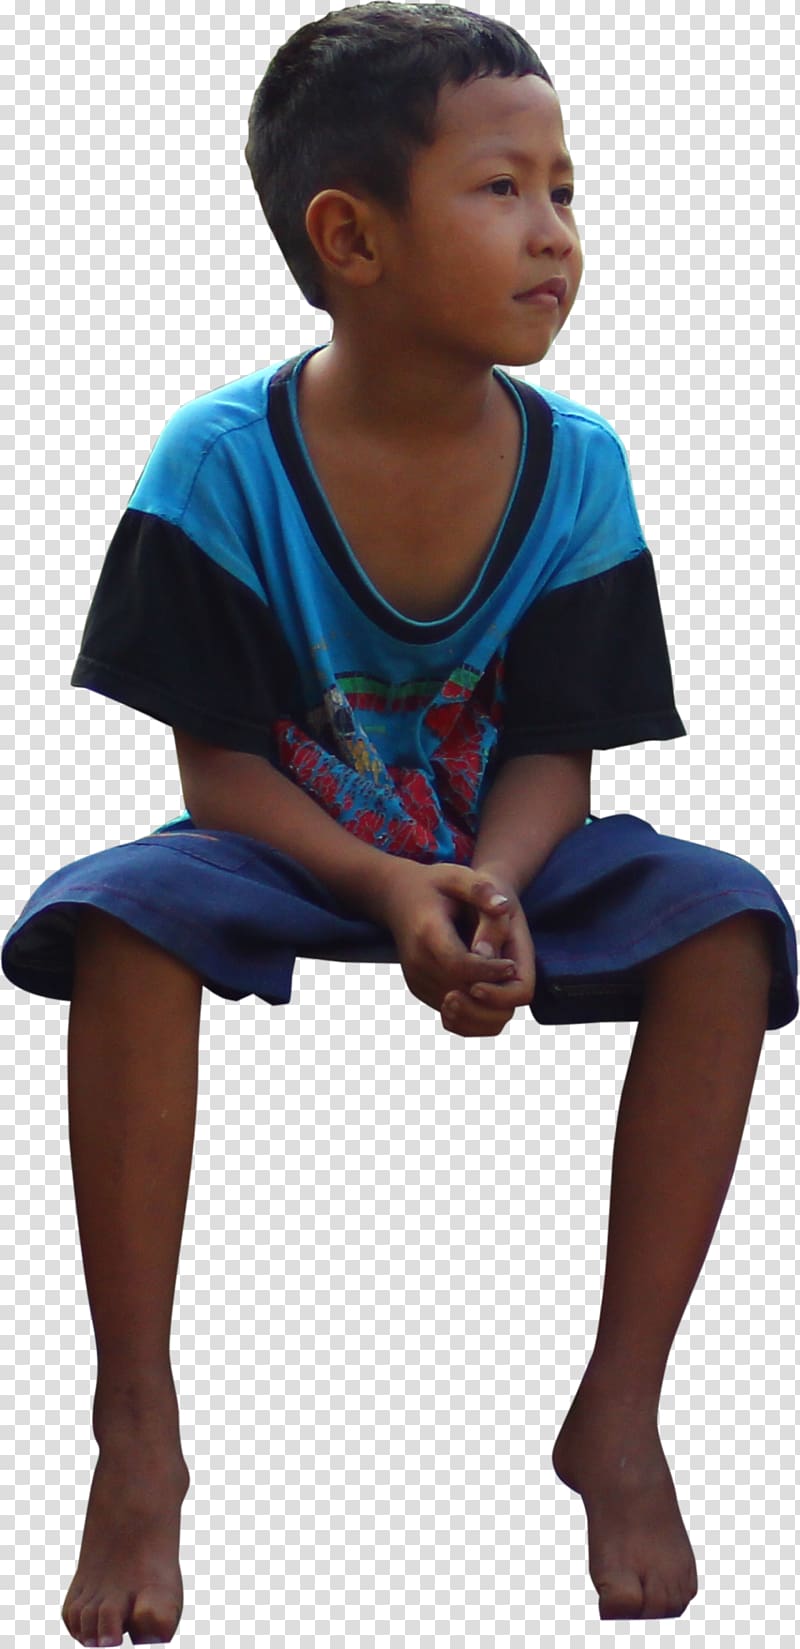 Shoulder Sleeve Toddler Child, kids sit transparent background PNG clipart